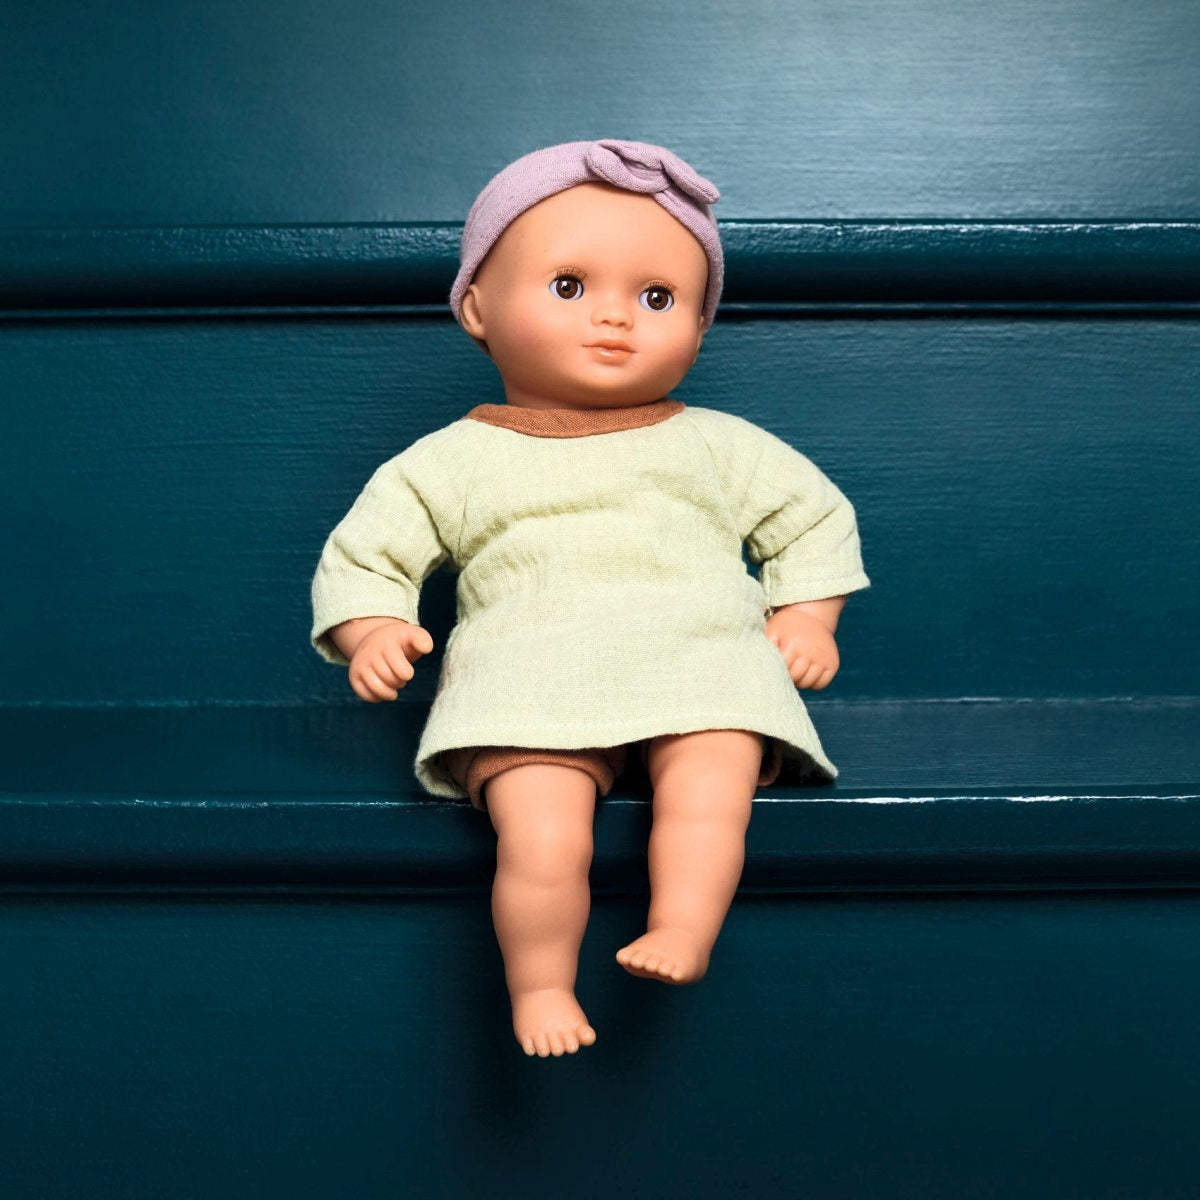 Die DJECO Puppe Pistache hat braune Schlafaugen und einen weichen anschmiegsamen Körper. Eine süße Puppe mit  Engelsgesicht für Kinder ab 18 Monaten. Sie ist leicht und mit 32 cm perfekt für kleine Arme geeignet.